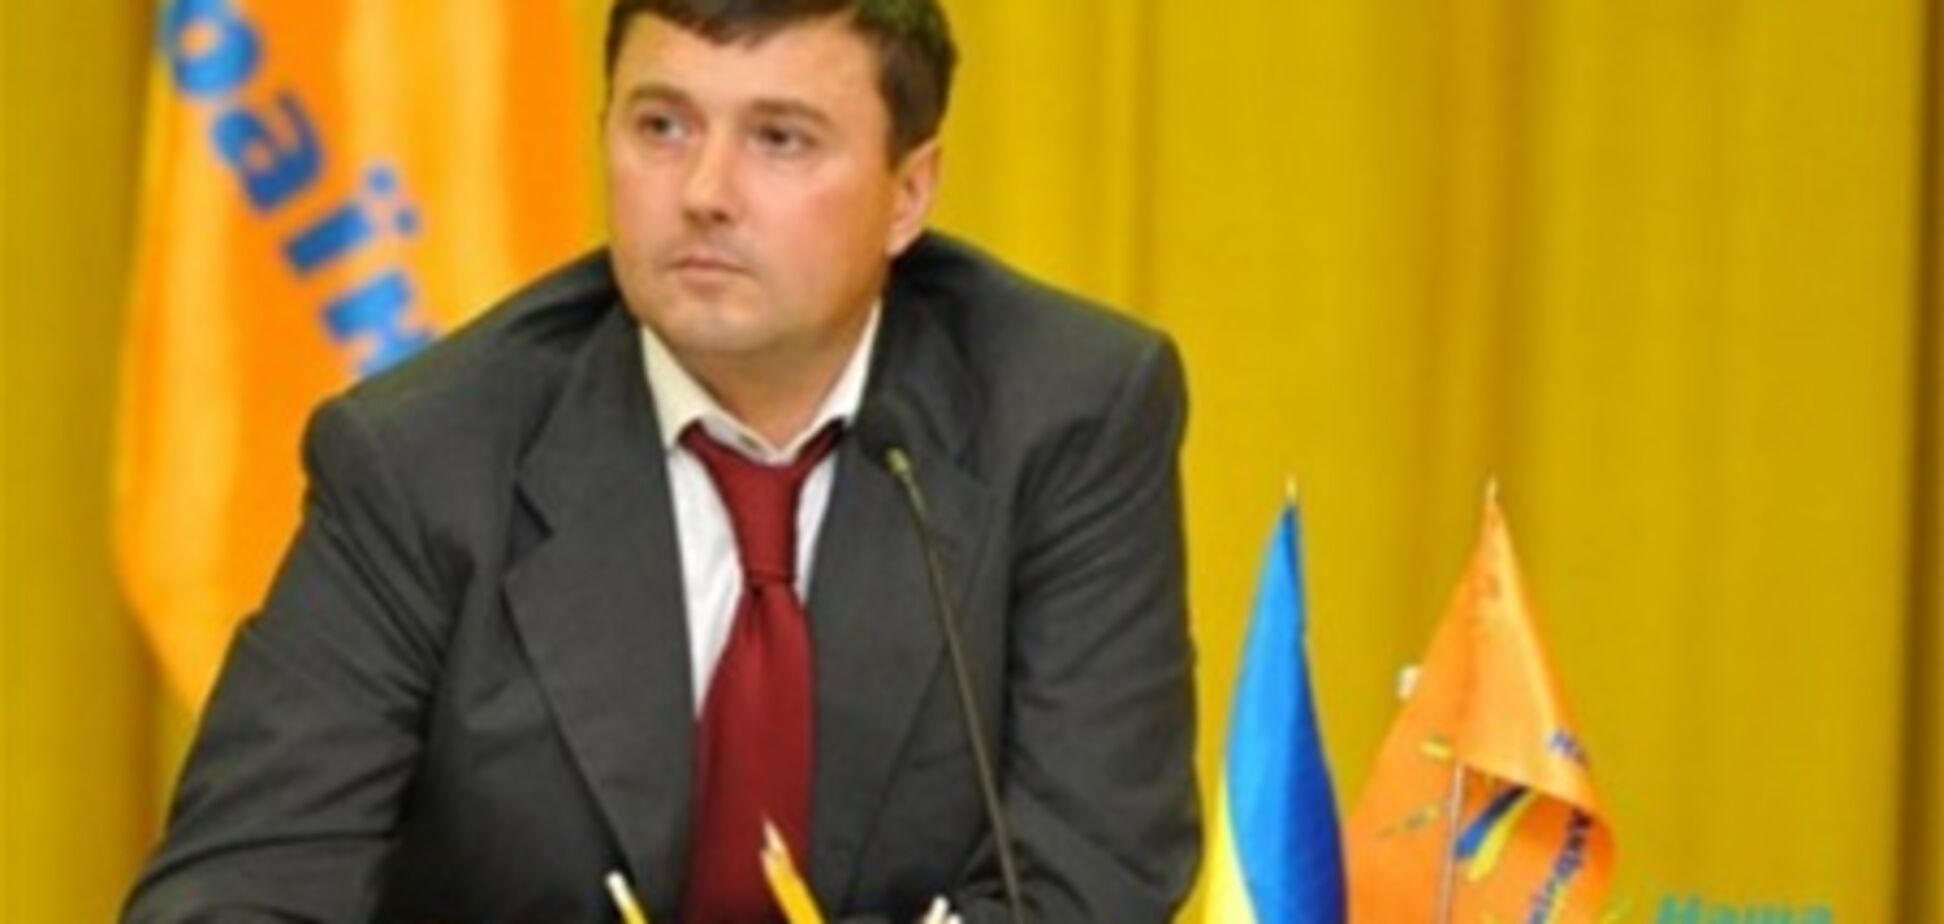 Бондарчук розповів про конфлікт у 'Нашій Україні'